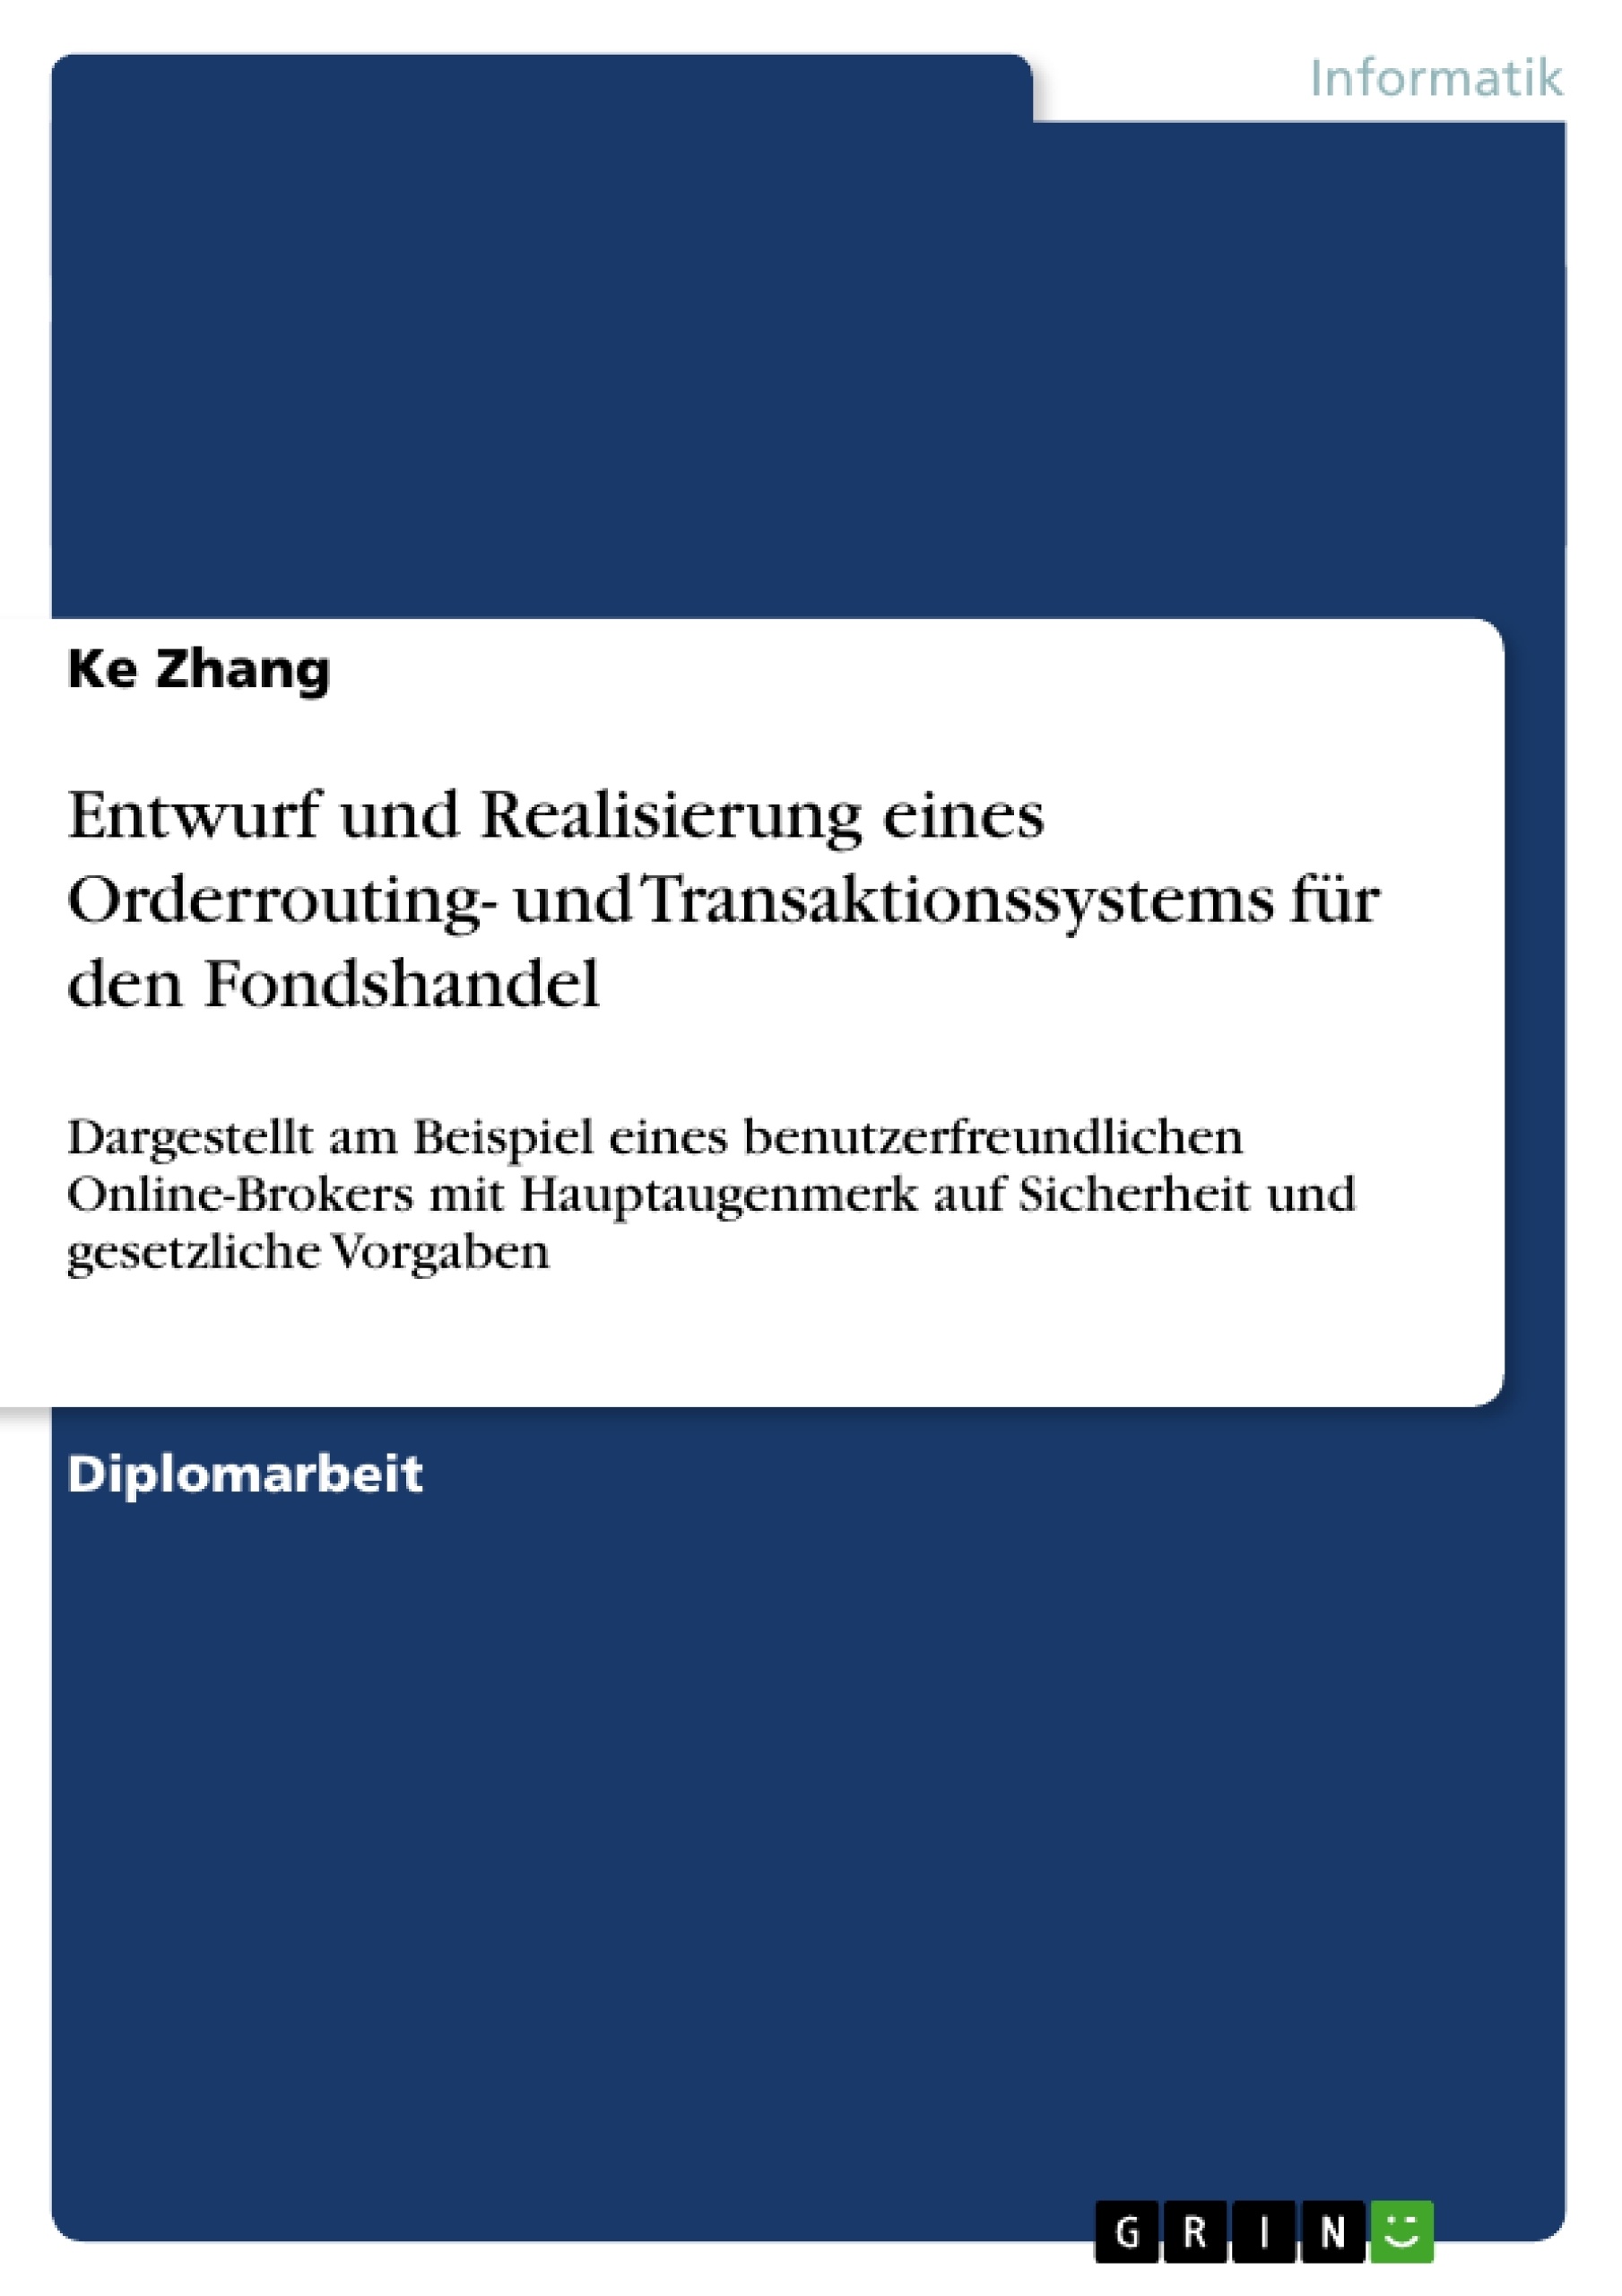 Title: Entwurf und Realisierung eines Orderrouting- und Transaktionssystems für den Fondshandel